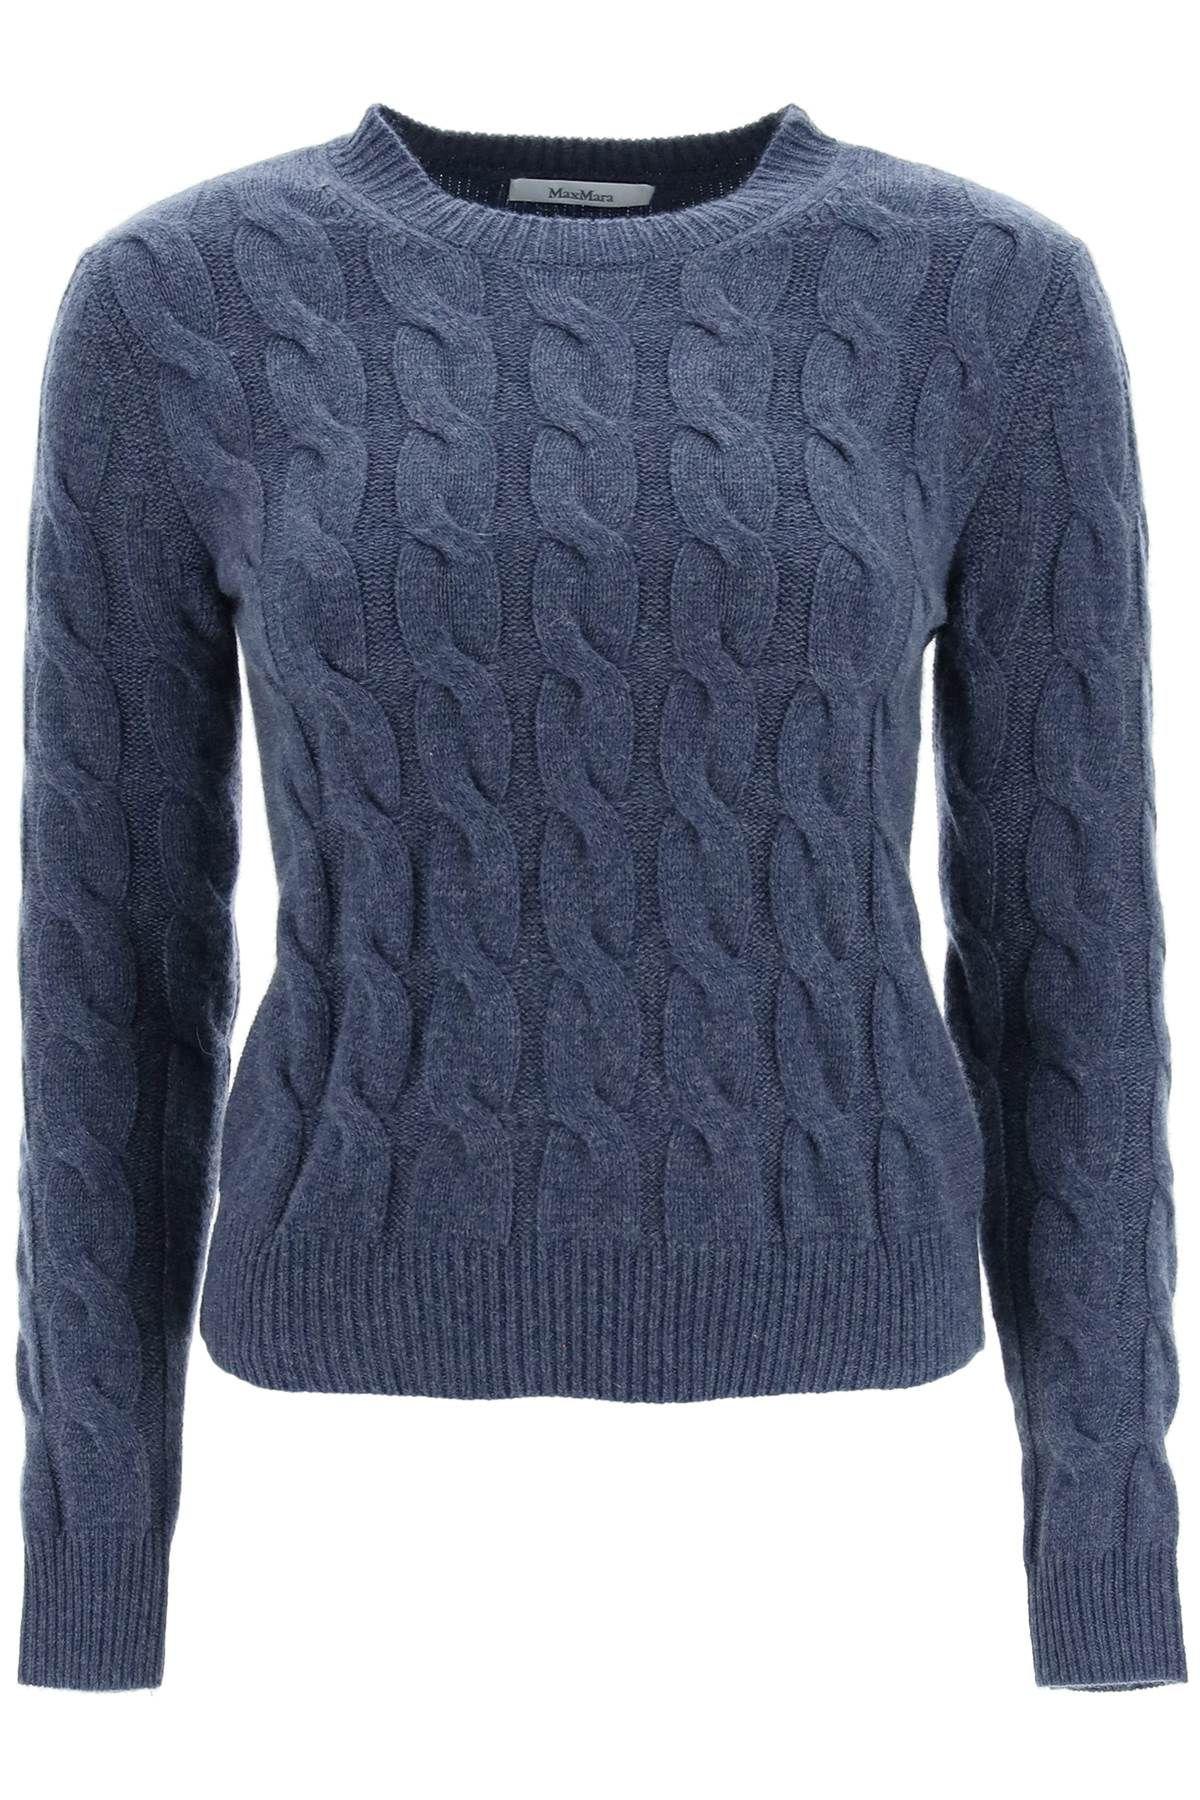 Max Mara edipo Cashmere Sweater